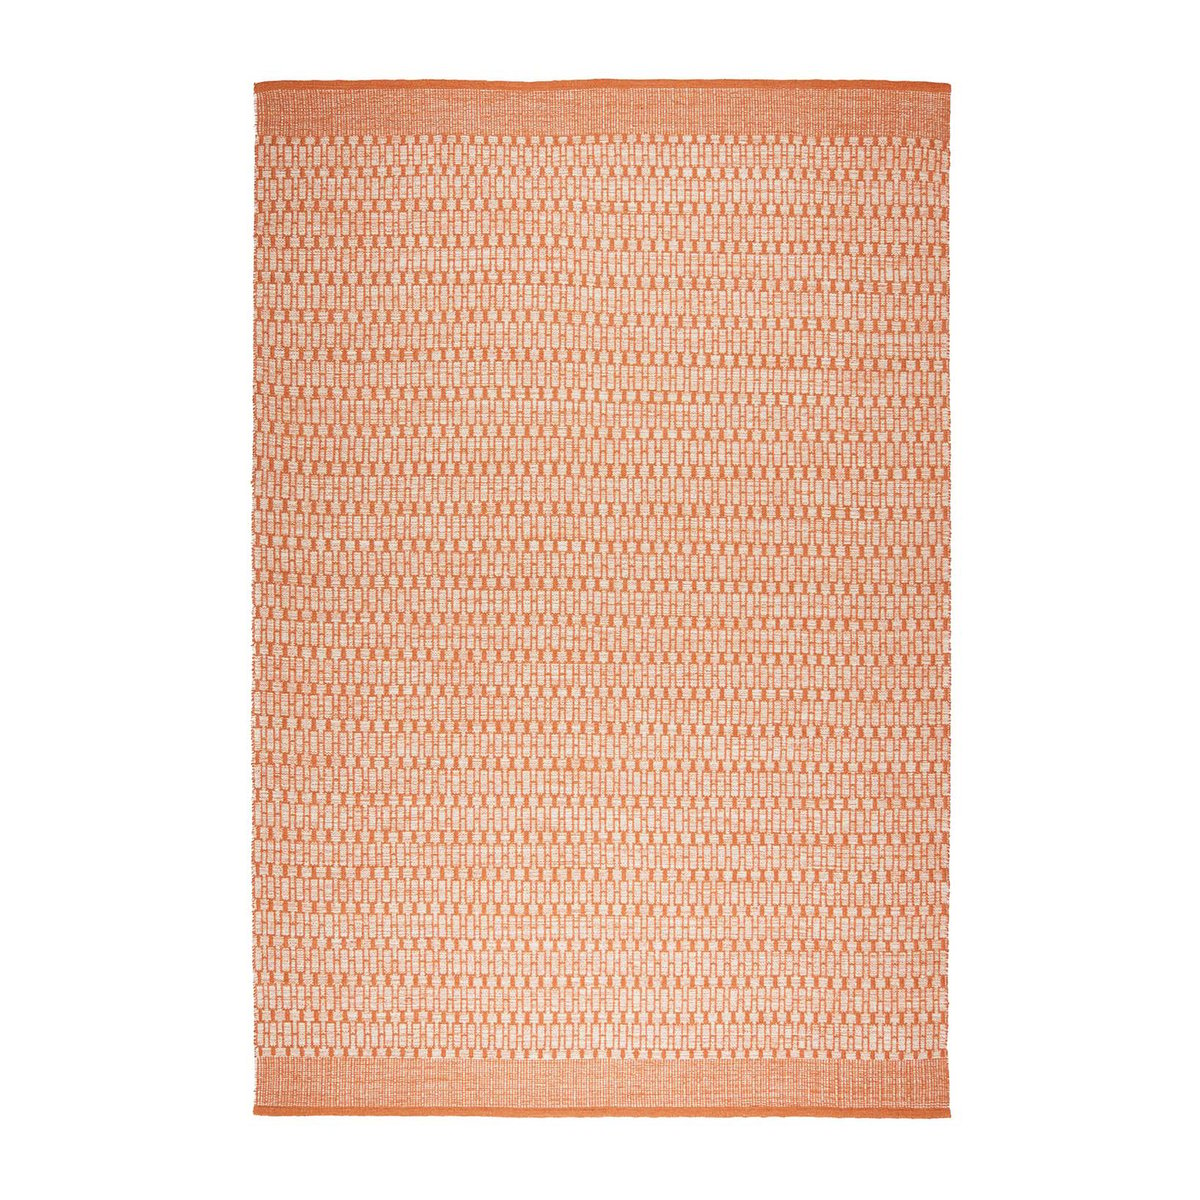 Chhatwal & Jonsson Mahi vloerkleed 170x240 cm Off white-orange